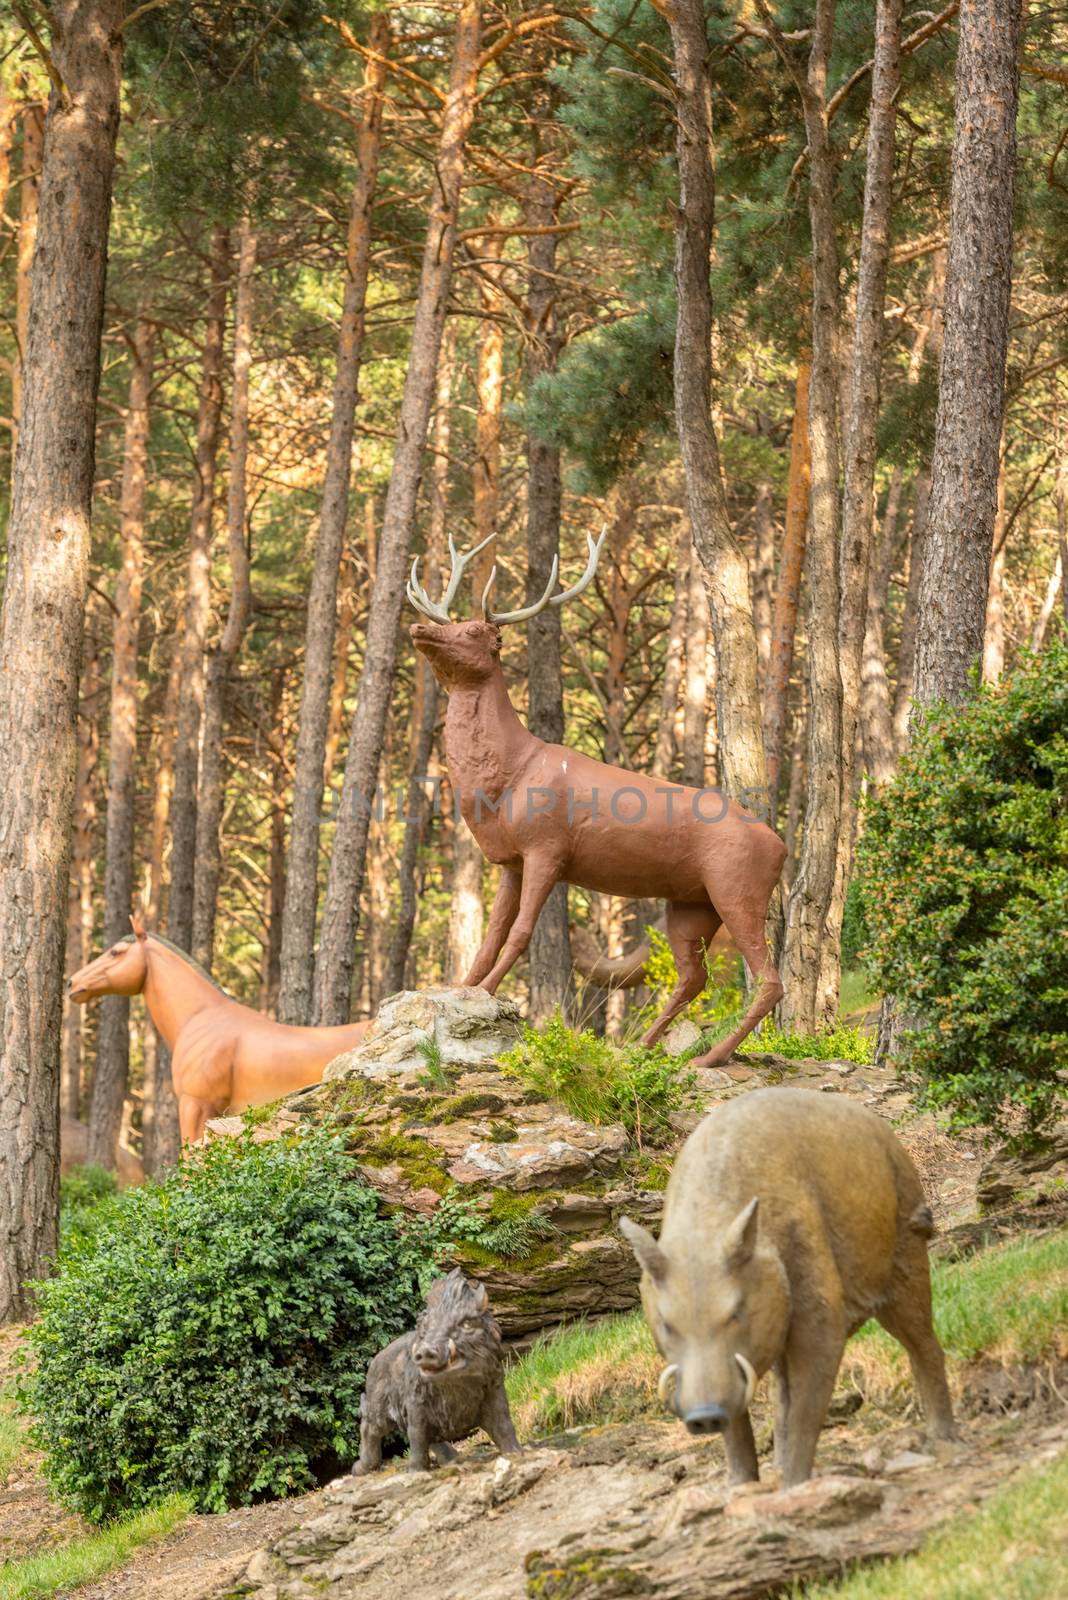 Juberri Sant Julia de Loria, Andorra: August 27 2020: Sculptures in Jardins de Juberri in summer 2020 in the Pyrenees of Andorra.